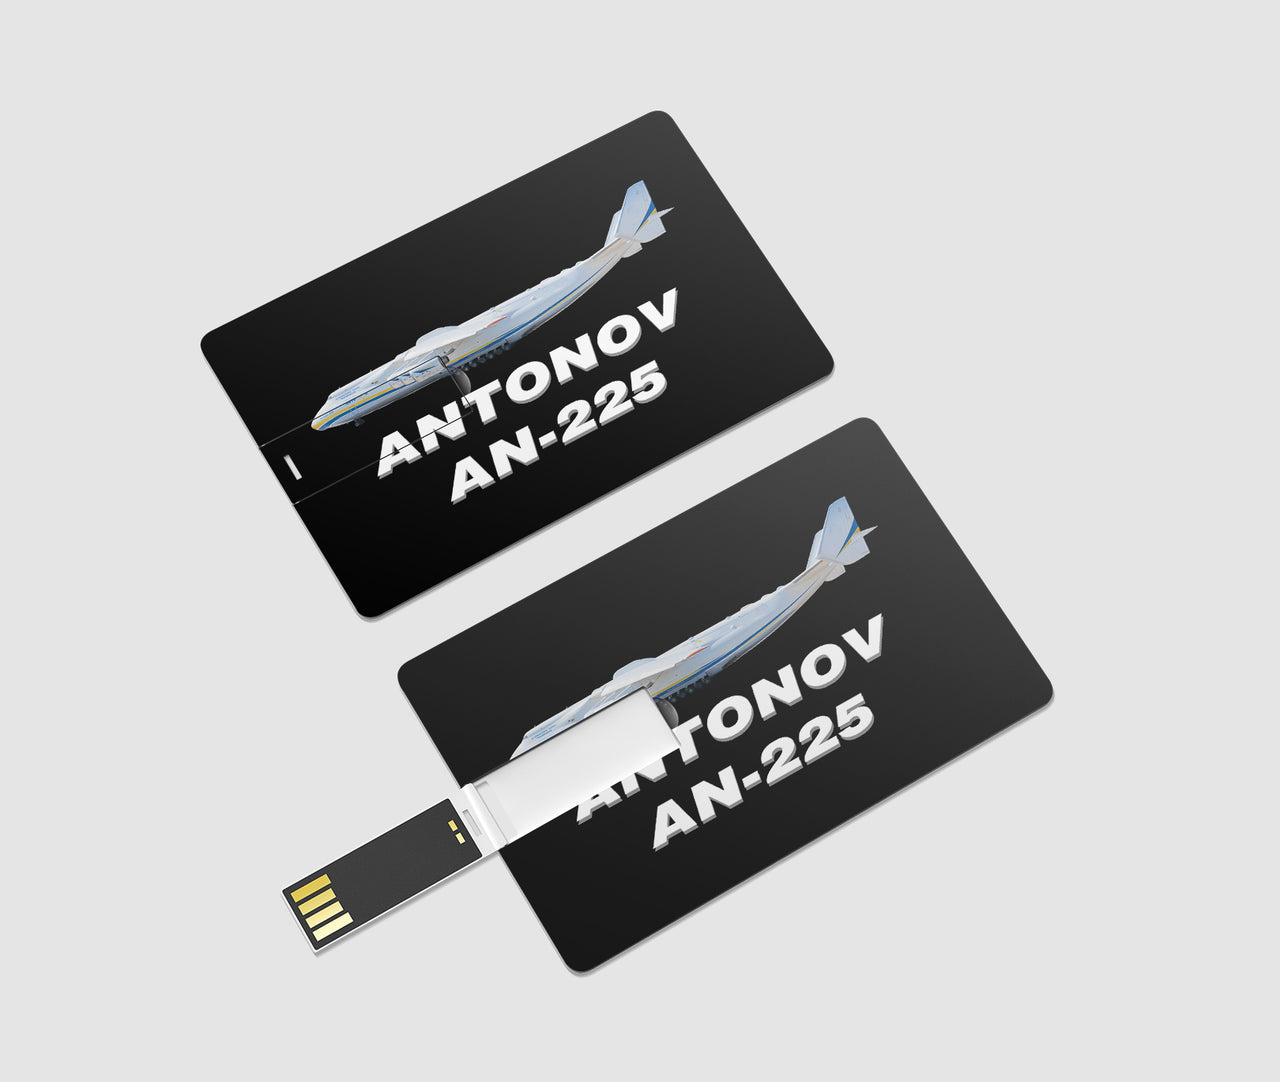 The Antonov AN-225 Designed USB Cards